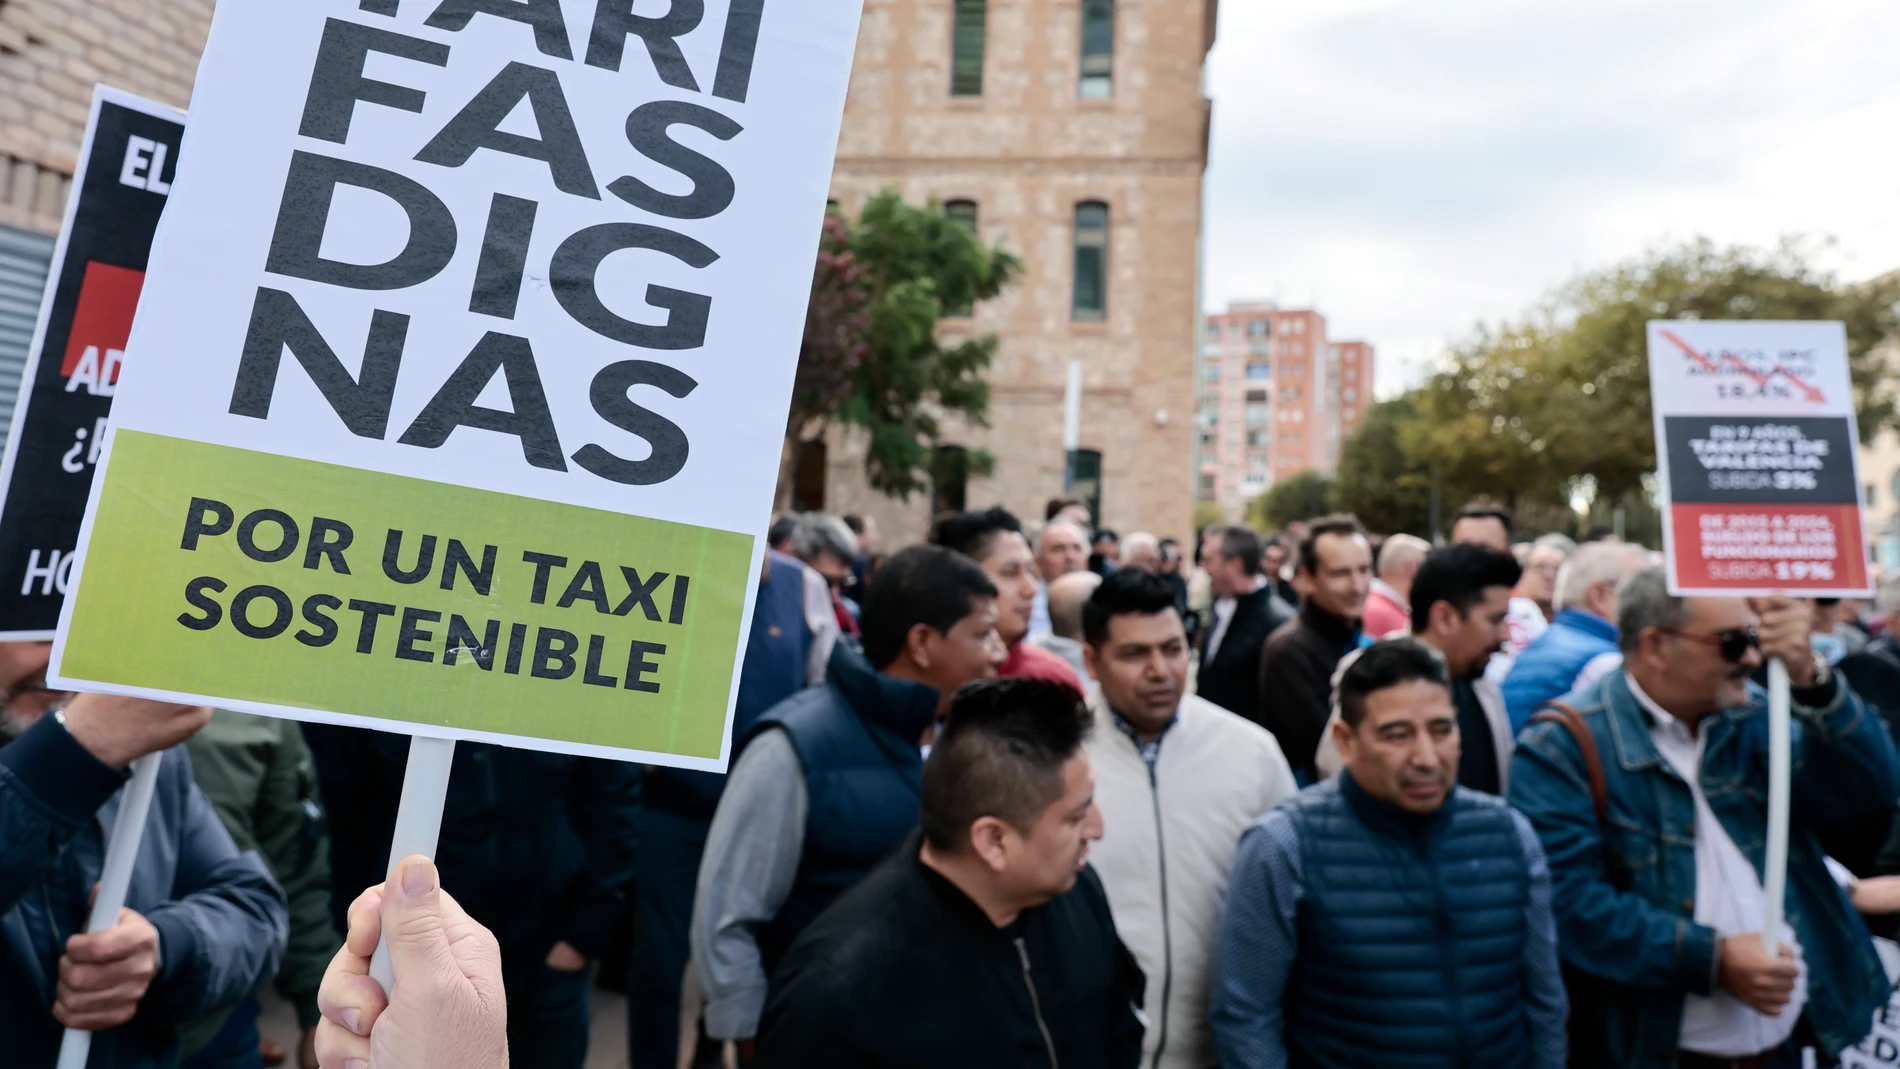 La Asociación Gremial del Taxi de Valencia y la Federación Sindical del Taxi de Valencia y Provincia celebran una manifestación para protestar por la política de la Conselleria de Movilidad.